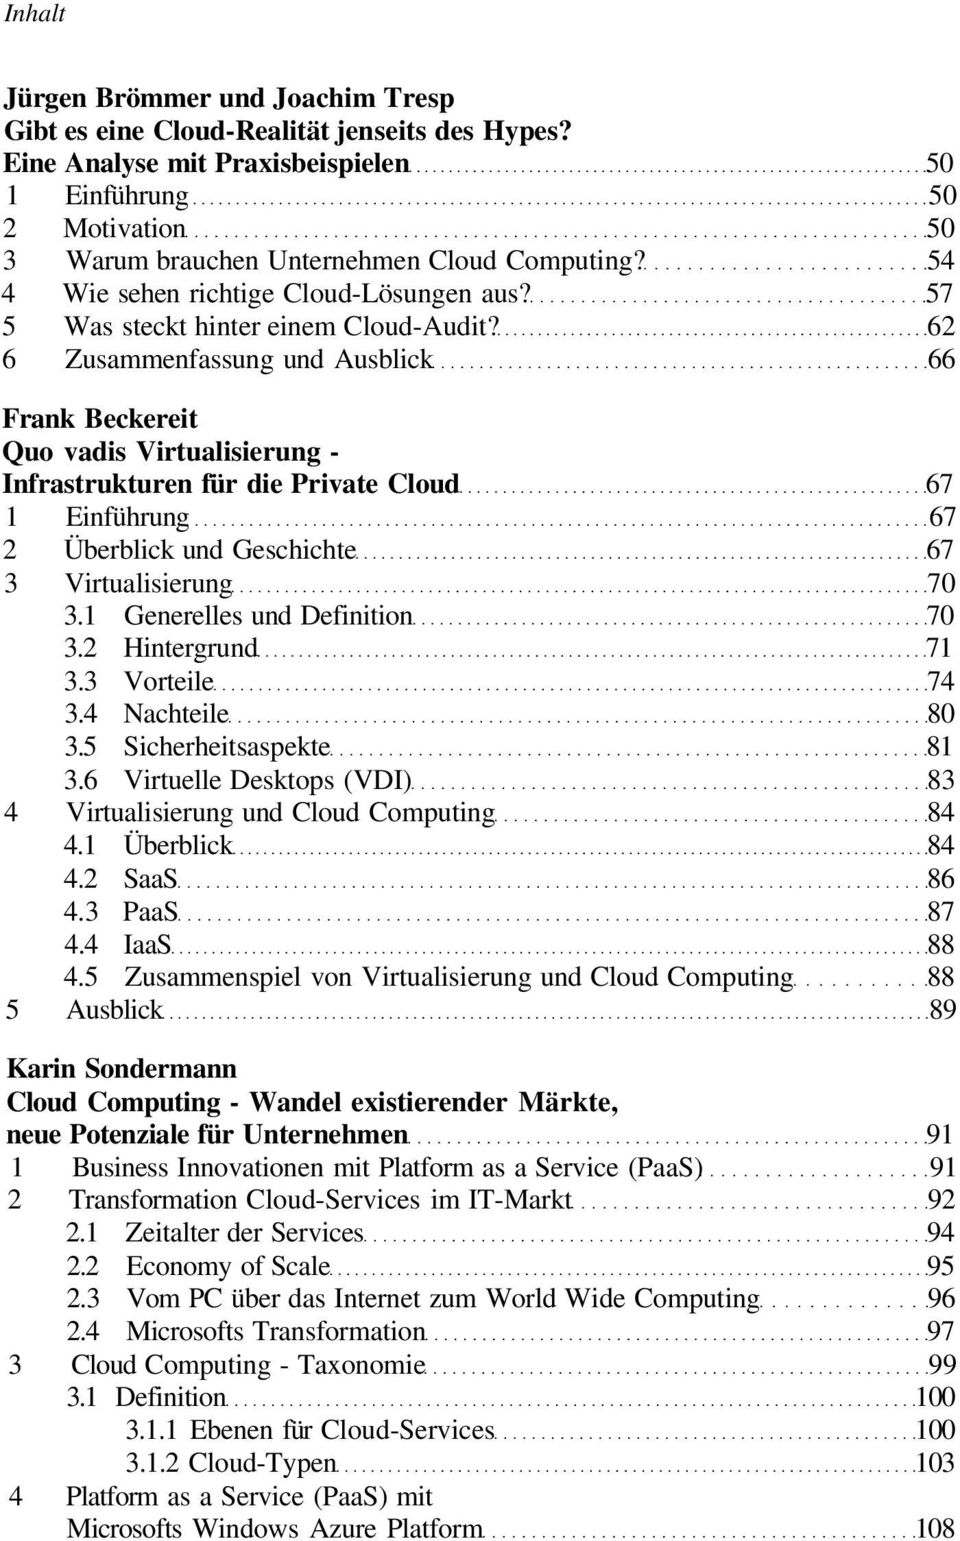 62 6 Zusammenfassung und Ausblick 66 Frank Beckereit Quo vadis Virtualisierung - Infrastrukturen für die Private Cloud 67 1 Einführung 67 2 Überblick und Geschichte 67 3 Virtualisierung 70 3.